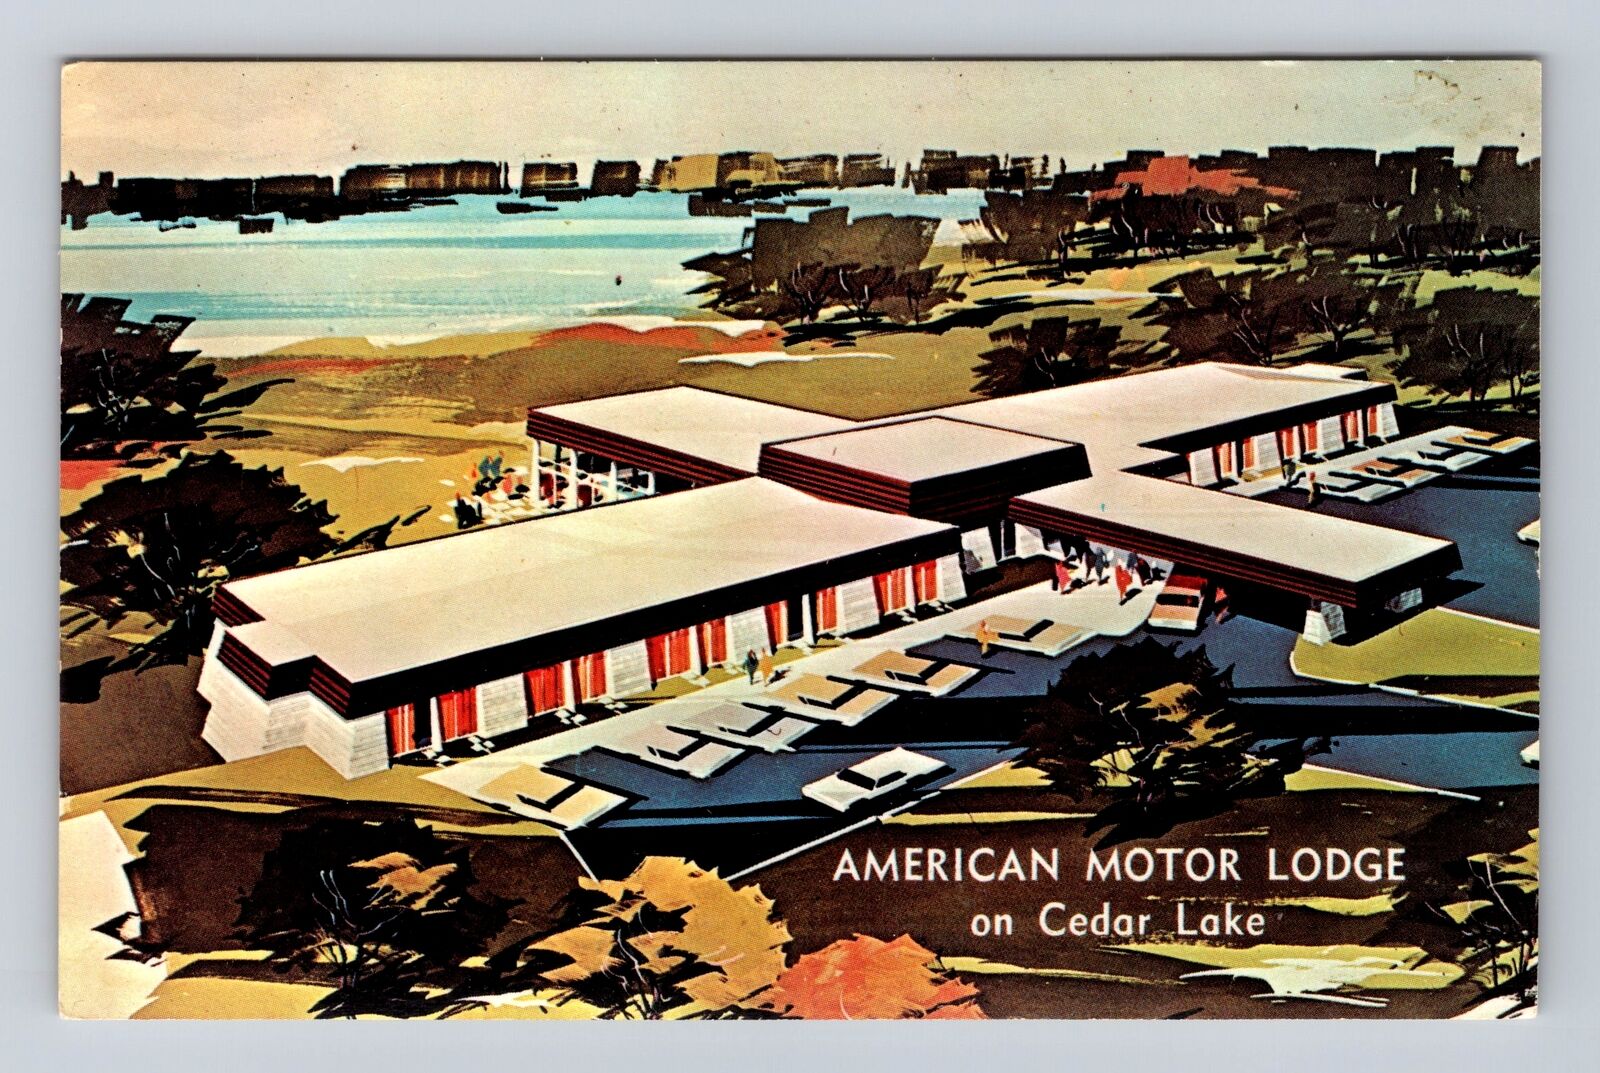 Sturbridge MA-Massachusetts, American Motor Lodge, Advertise, Vintage Postcard